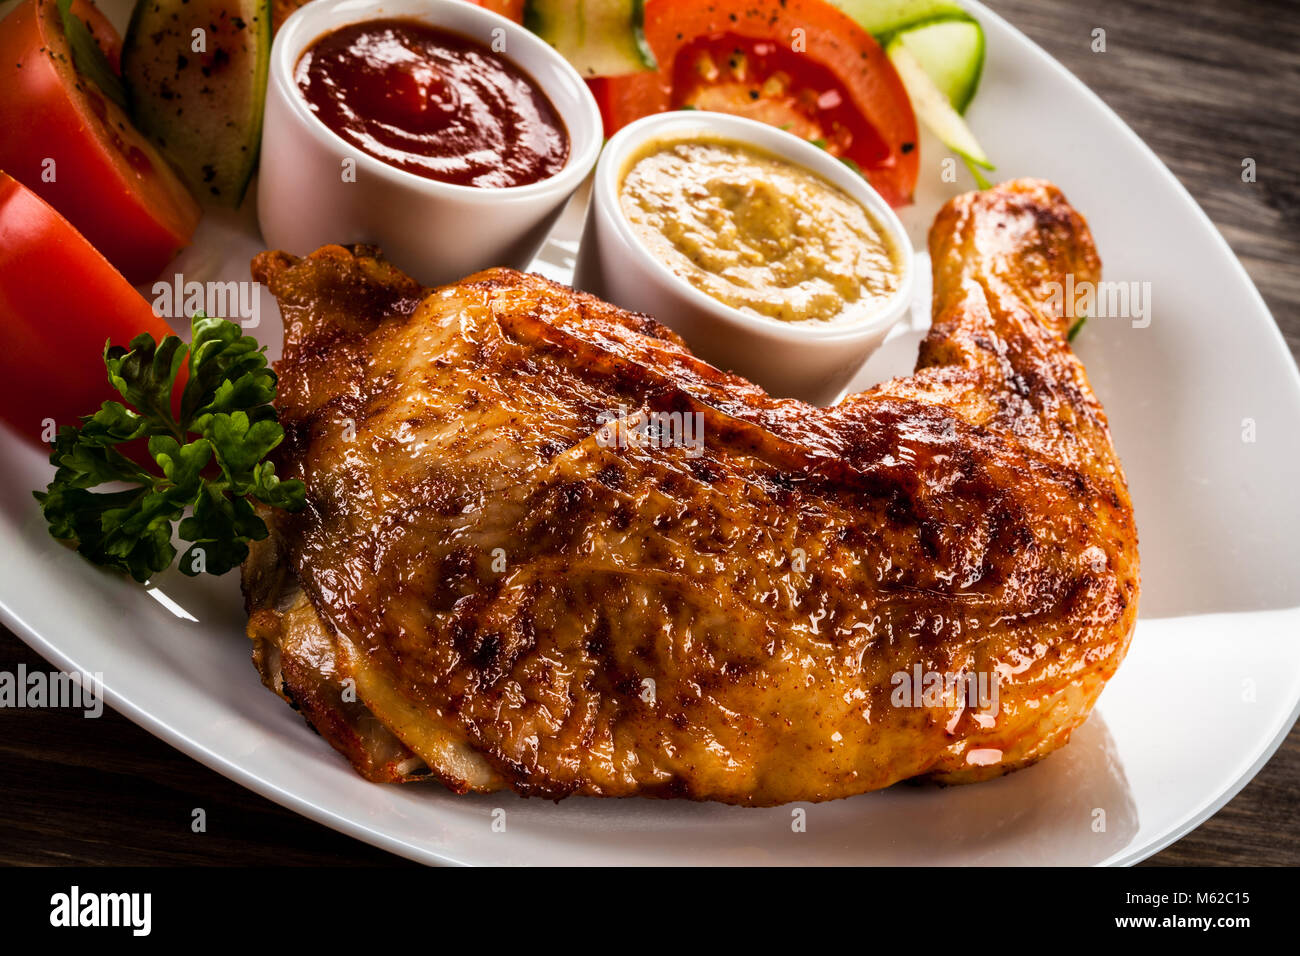 La Turquie grillé avec frites et légumes jambes sur table en bois Banque D'Images